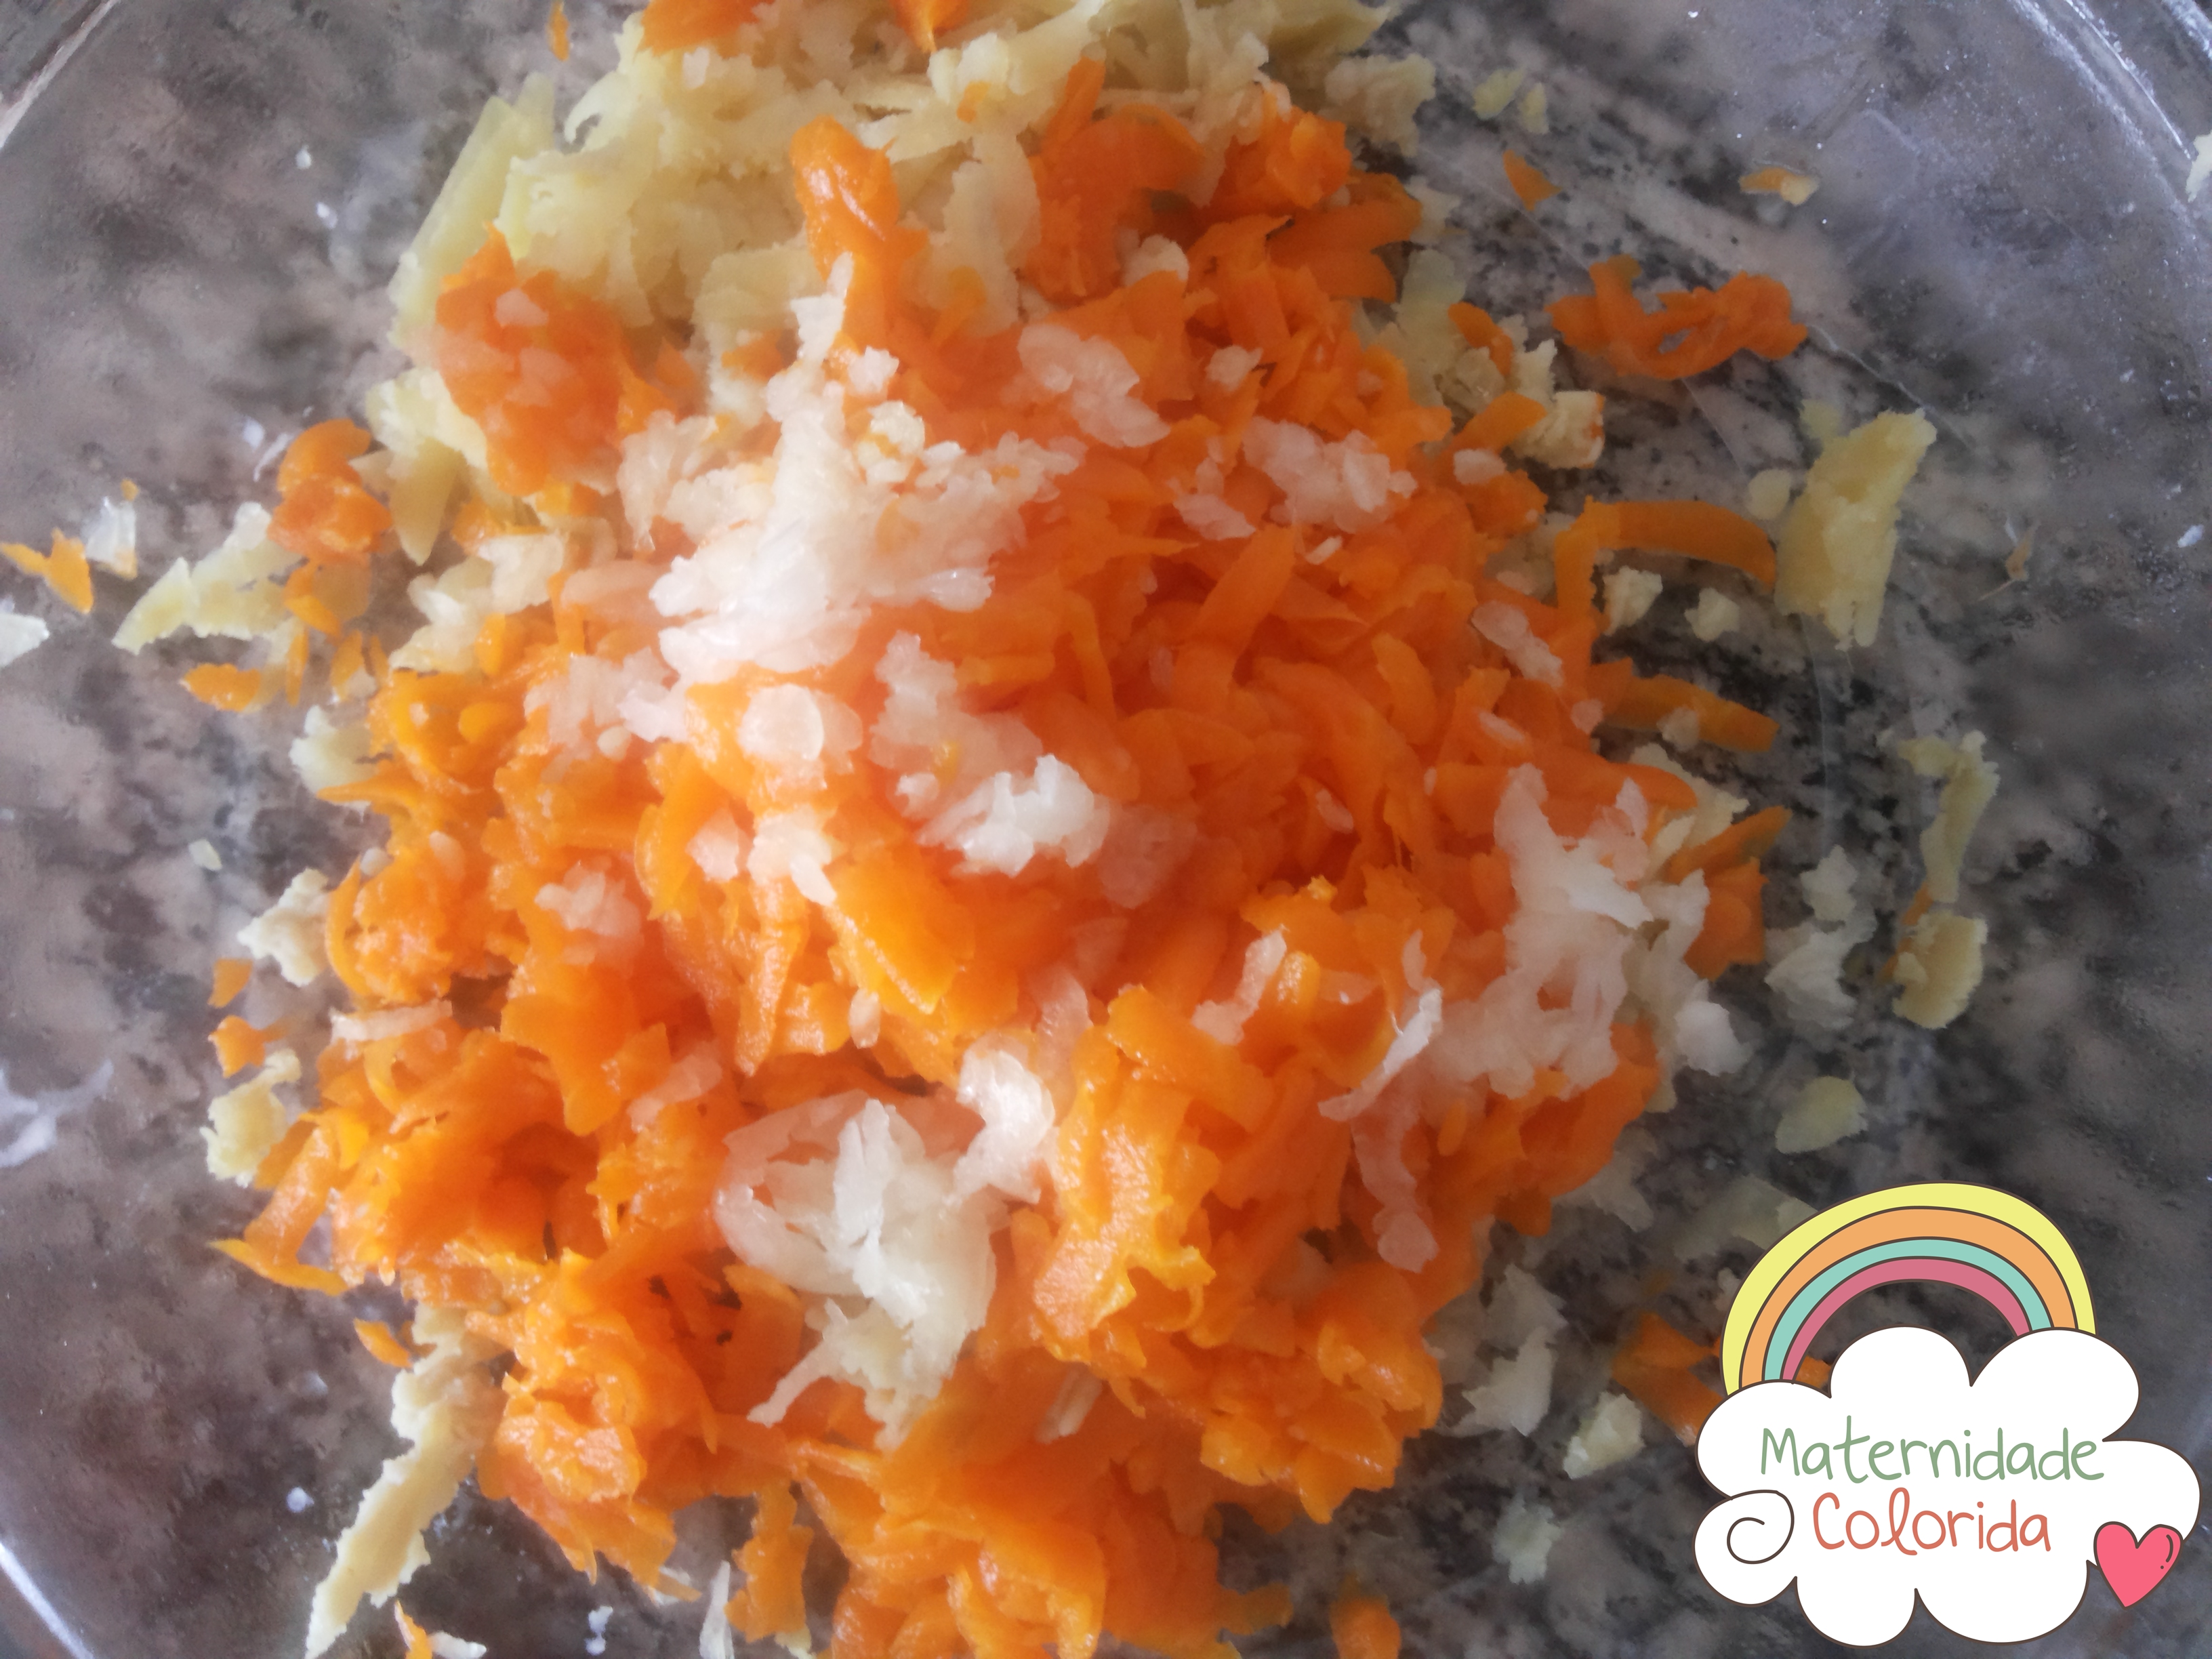 batata doce e cenoura rostie recheada com queijo